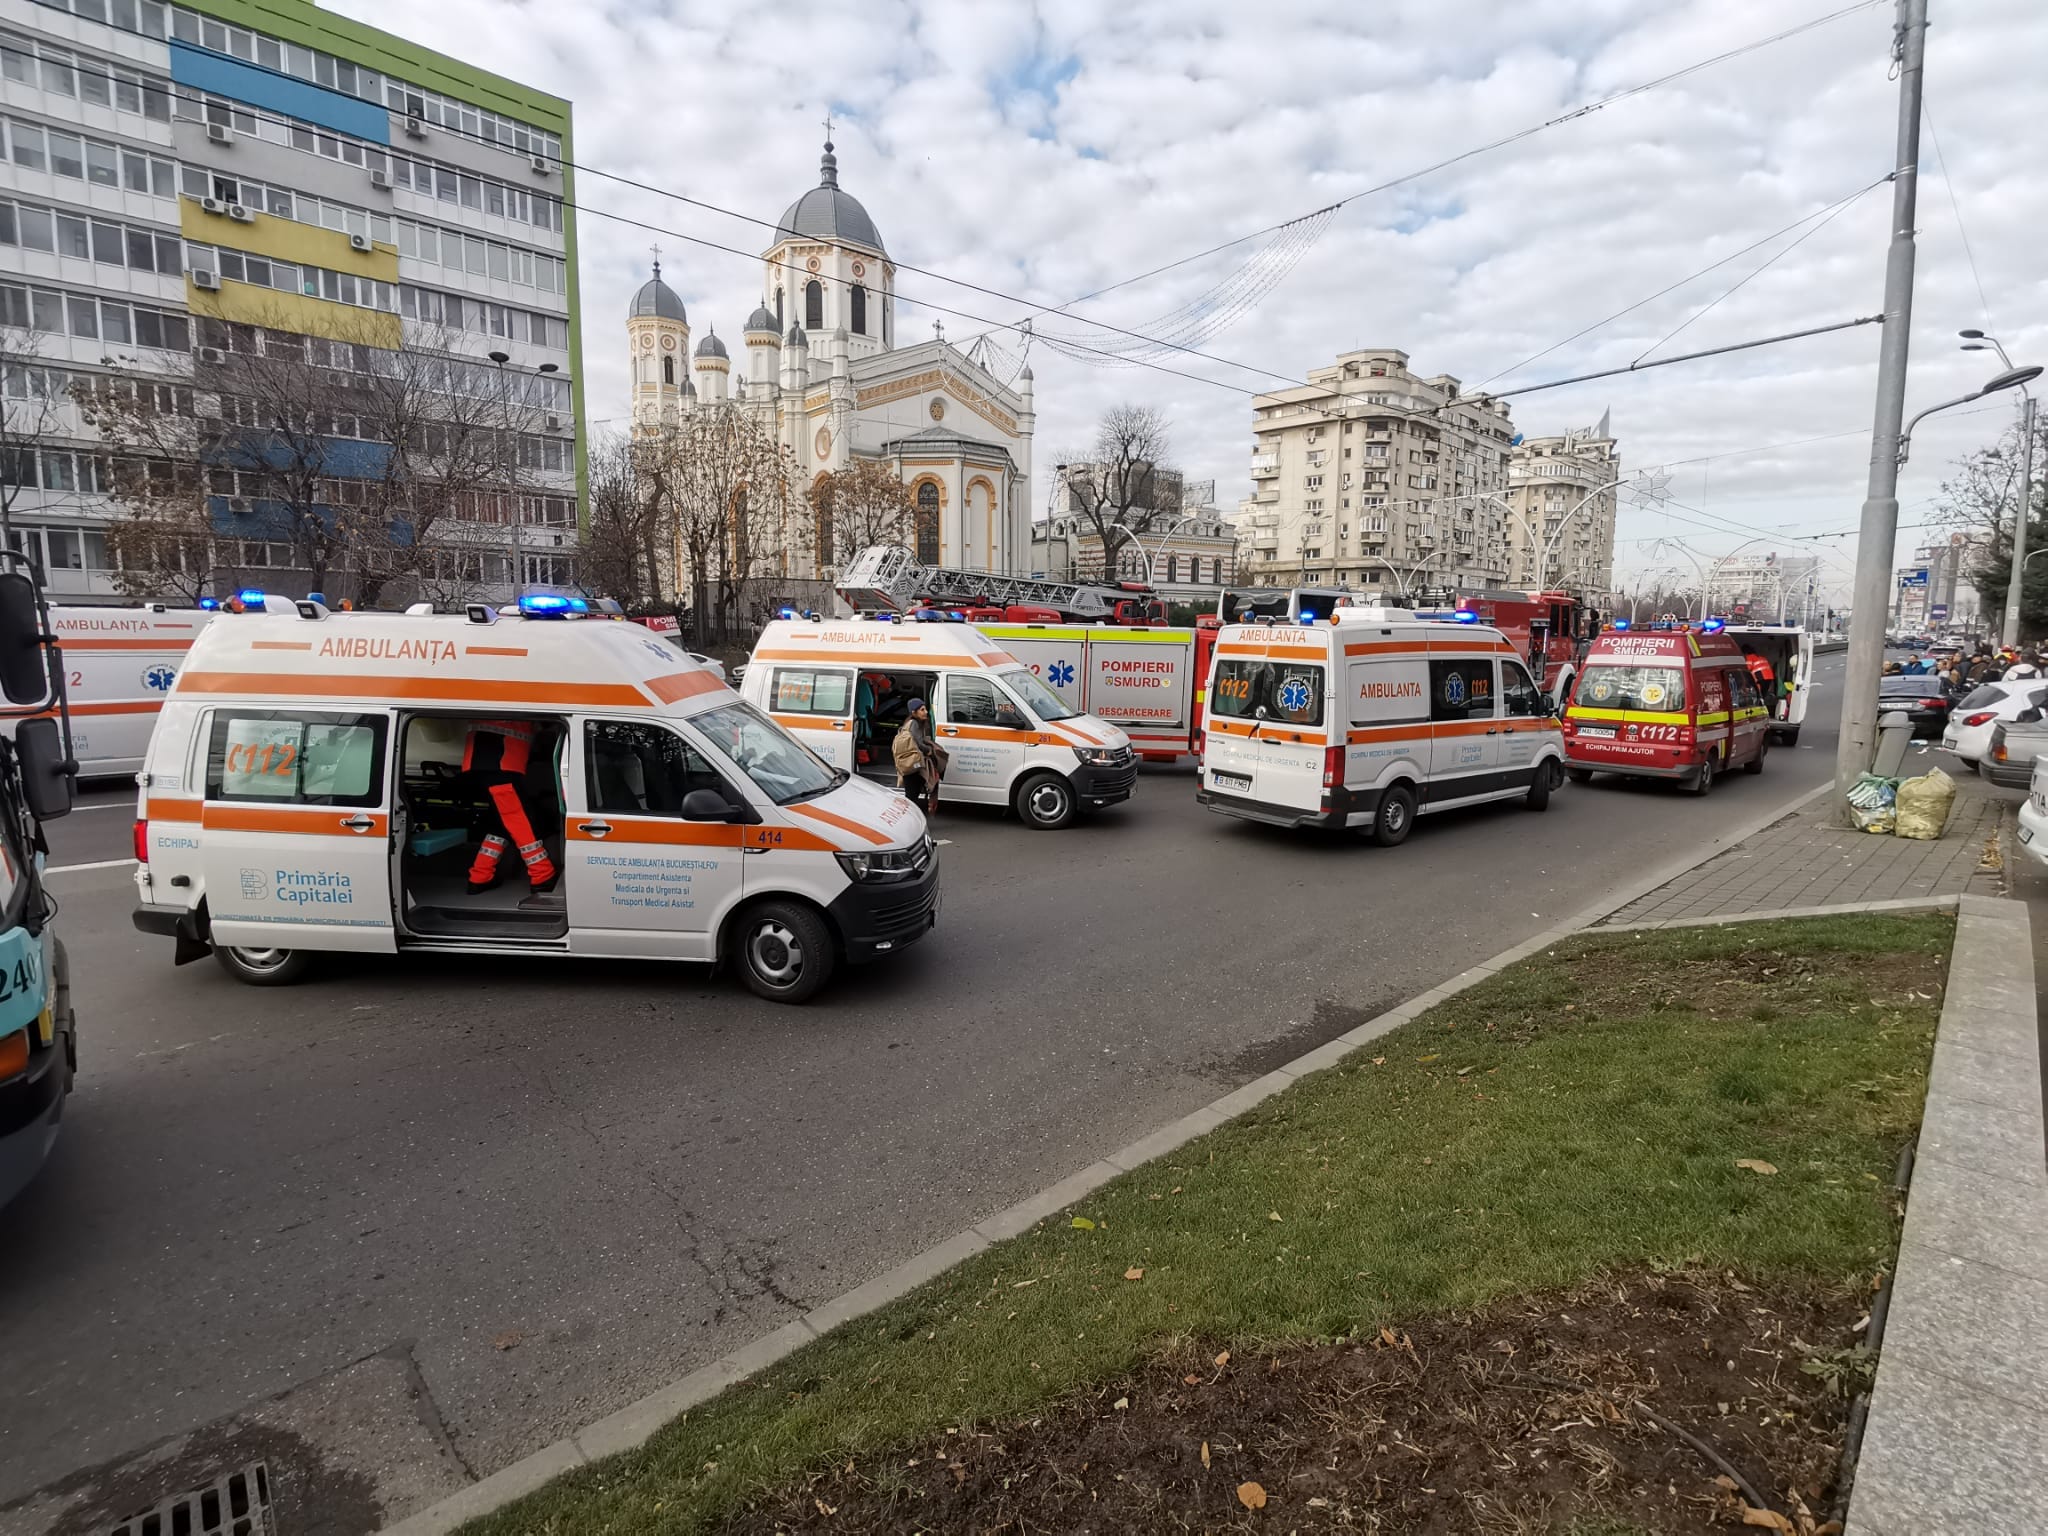 troxaio voukouresti 4 - Τροχαίο-σοκ στη Ρουμανία με λεωφορείο που μετέφερε 47 Έλληνες - Ένας νεκρός, 23 τραυματίες (εικόνες & βίντεο)